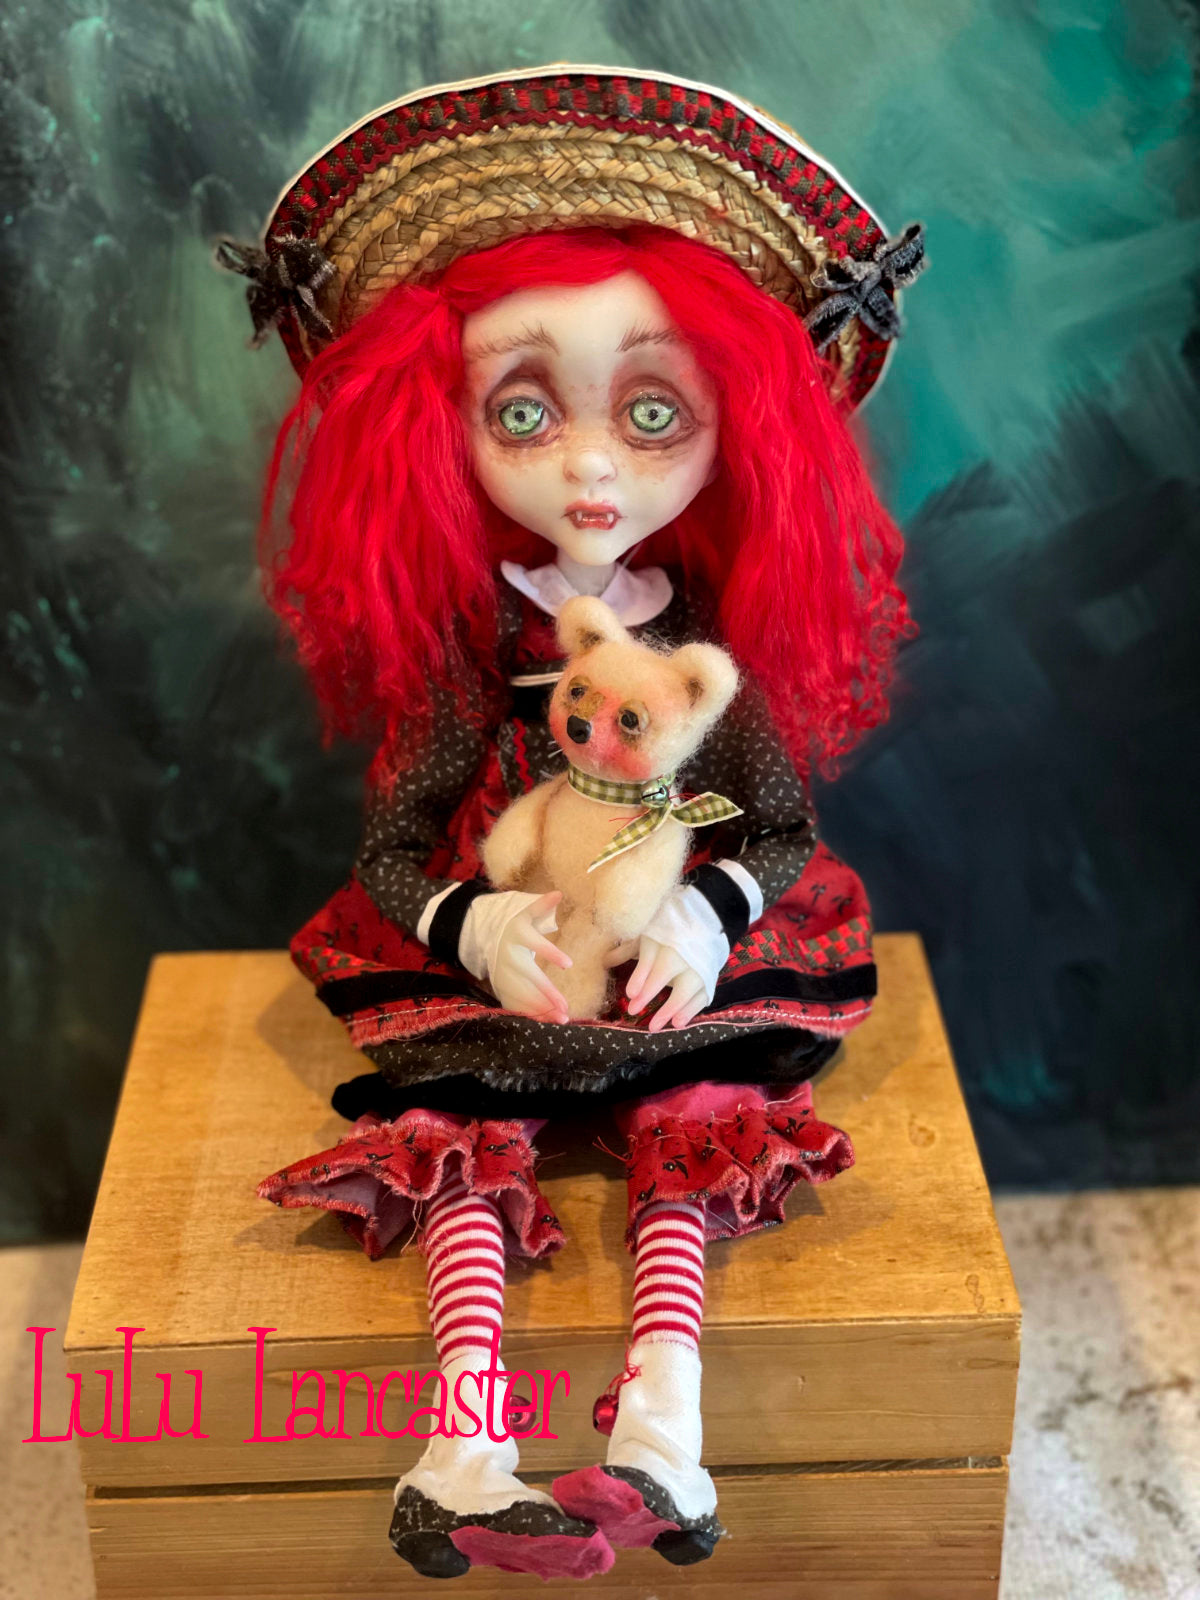 Scarlet Winter Holiday Vampire Original LuLu Lancaster Art Dolls